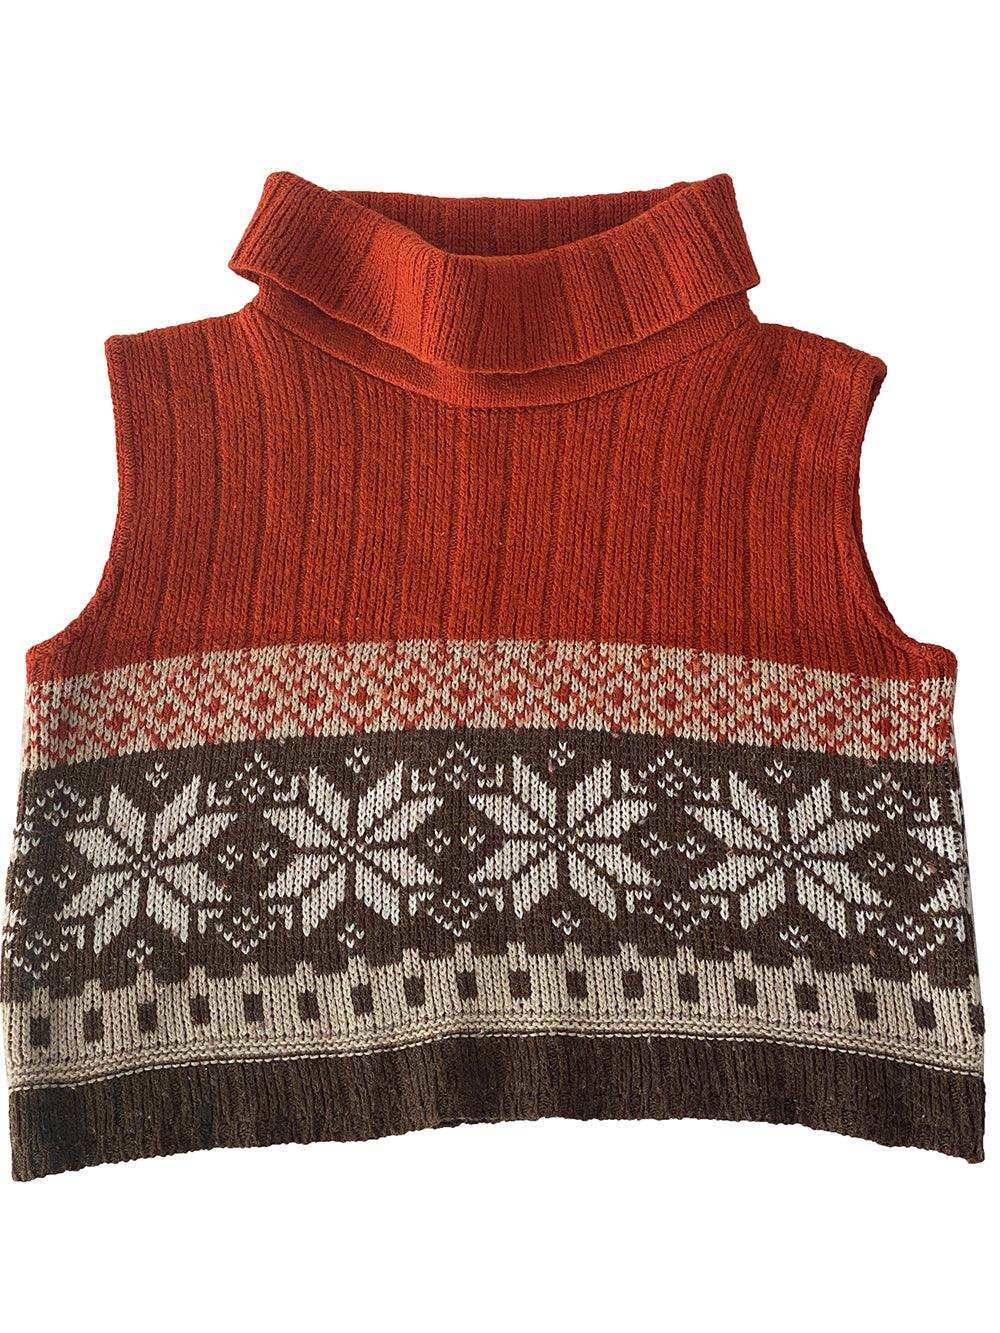 Vintage Knitted Sweater Vest - Balagan Vintage Vest 00s, 90s, knitted vest, NEW IN, vest